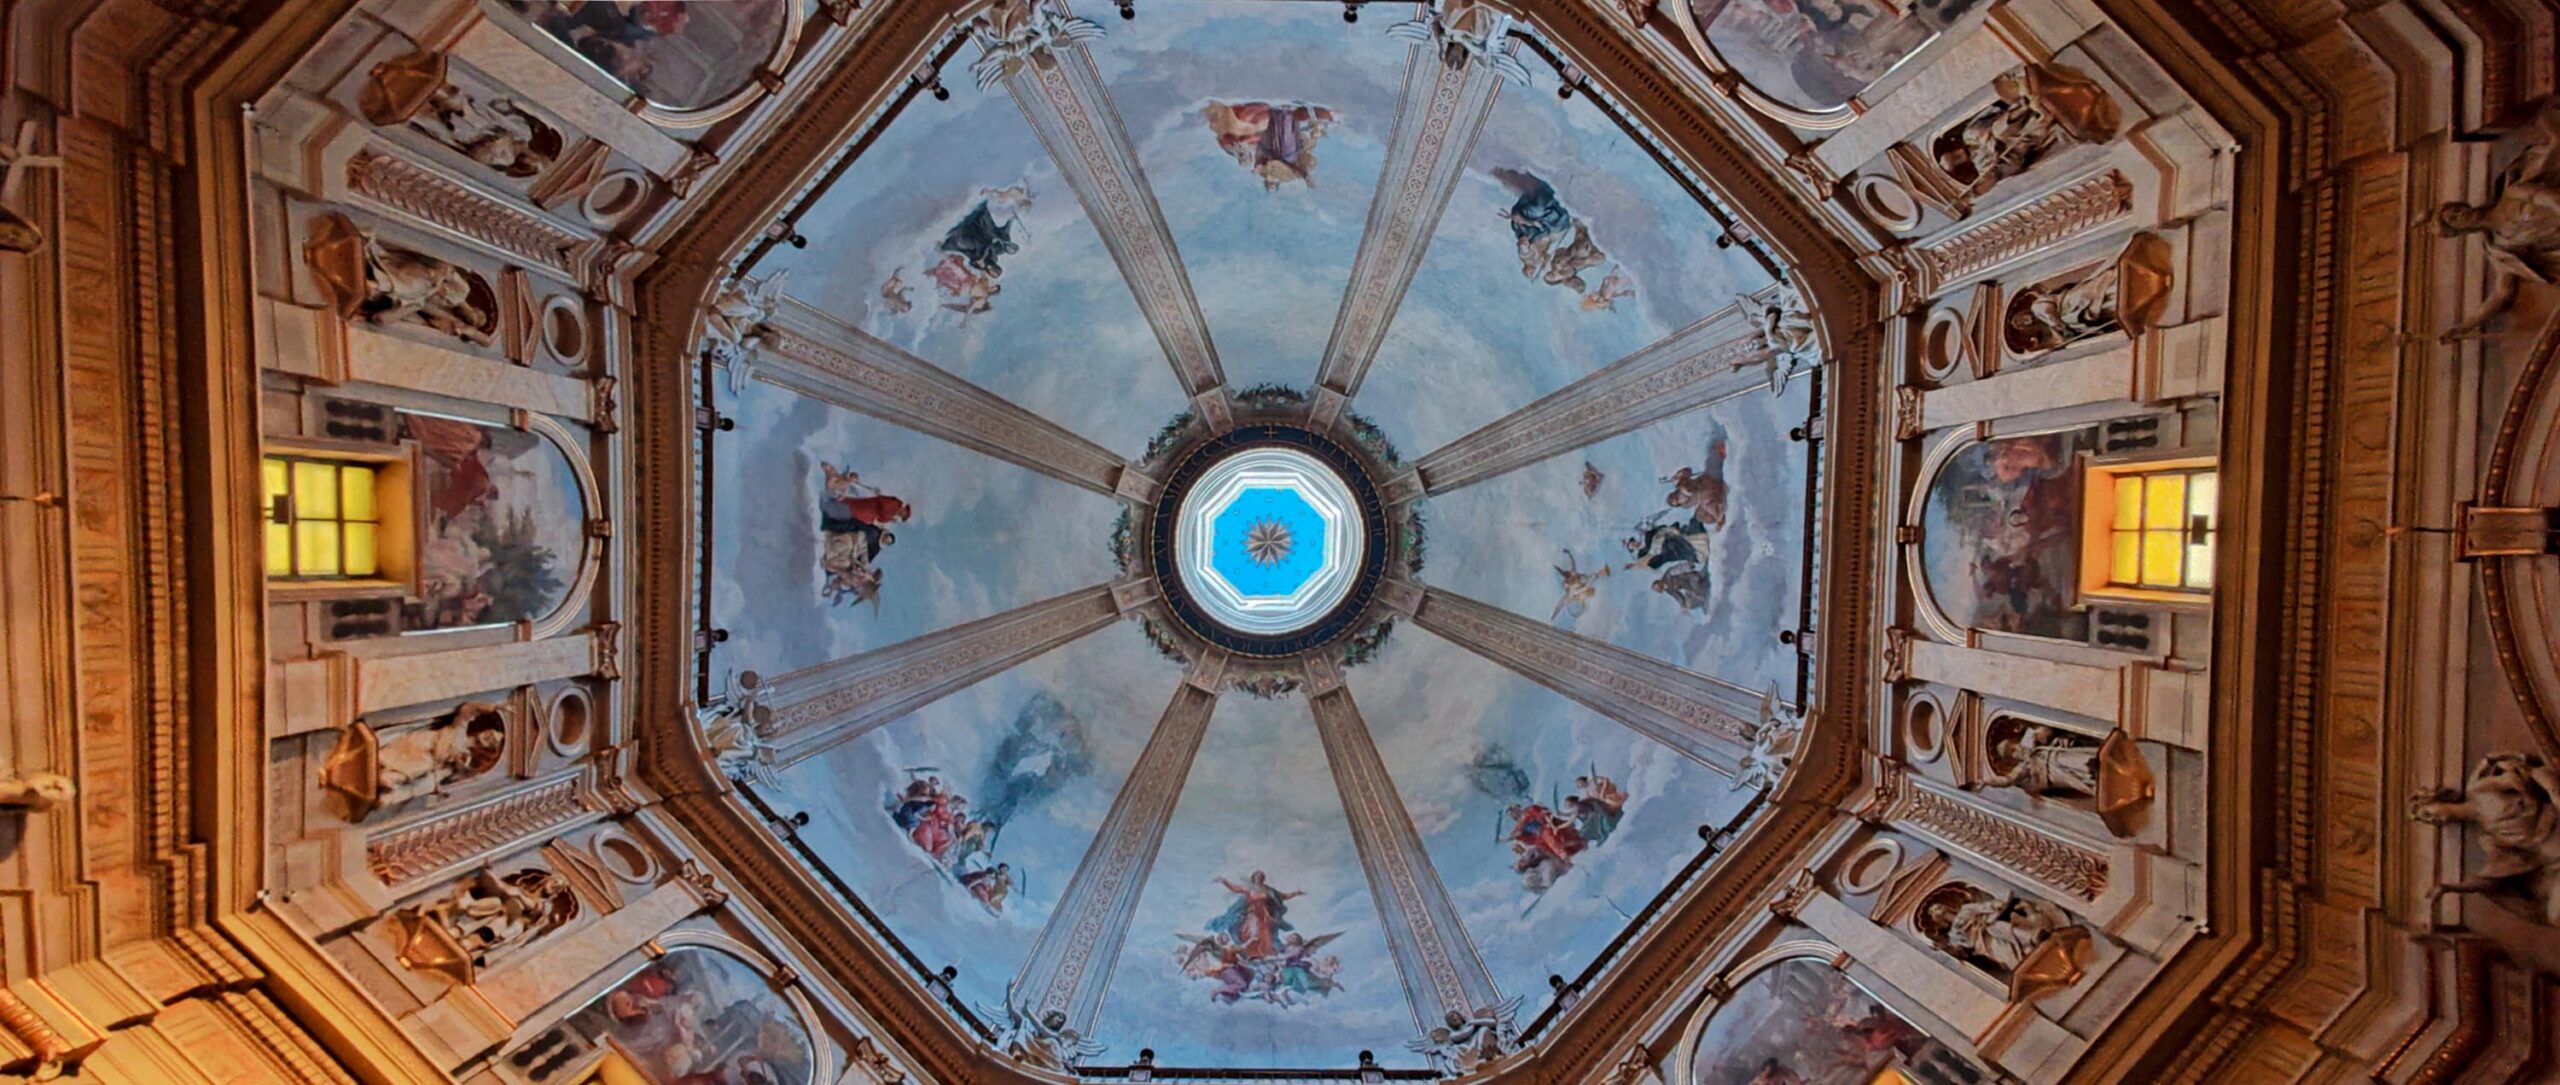 Montefiascone - VT - Cupola della Cattedrale di Santa Margherita